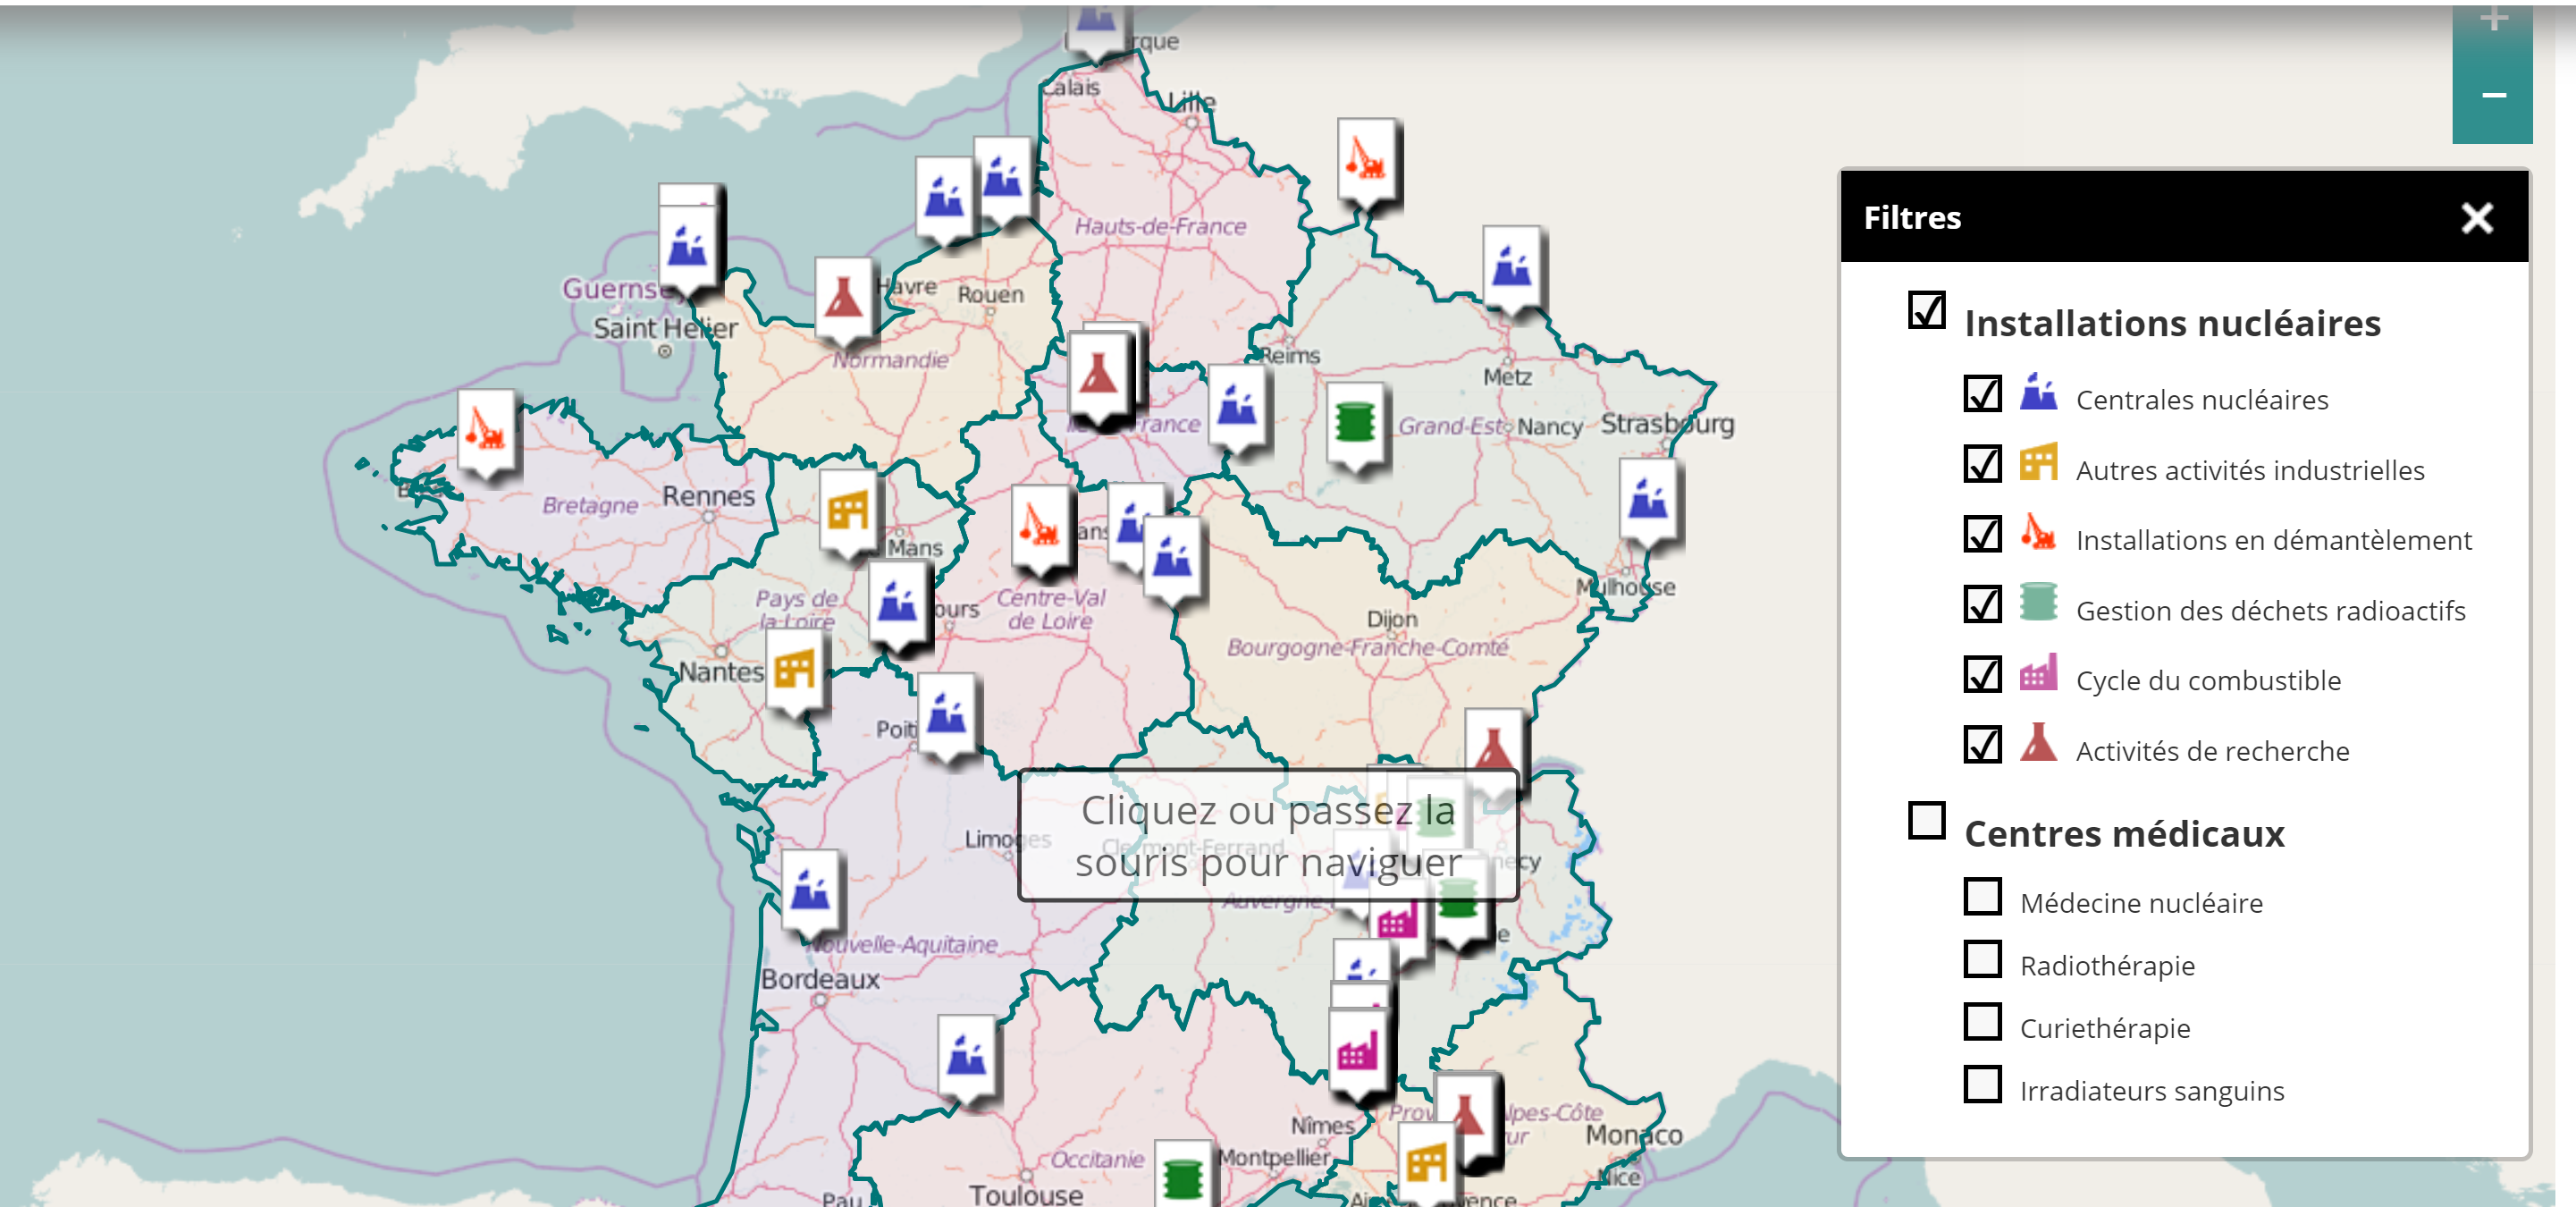 Mapa reaktorów jądrowych we Francji. Fot.: ASN